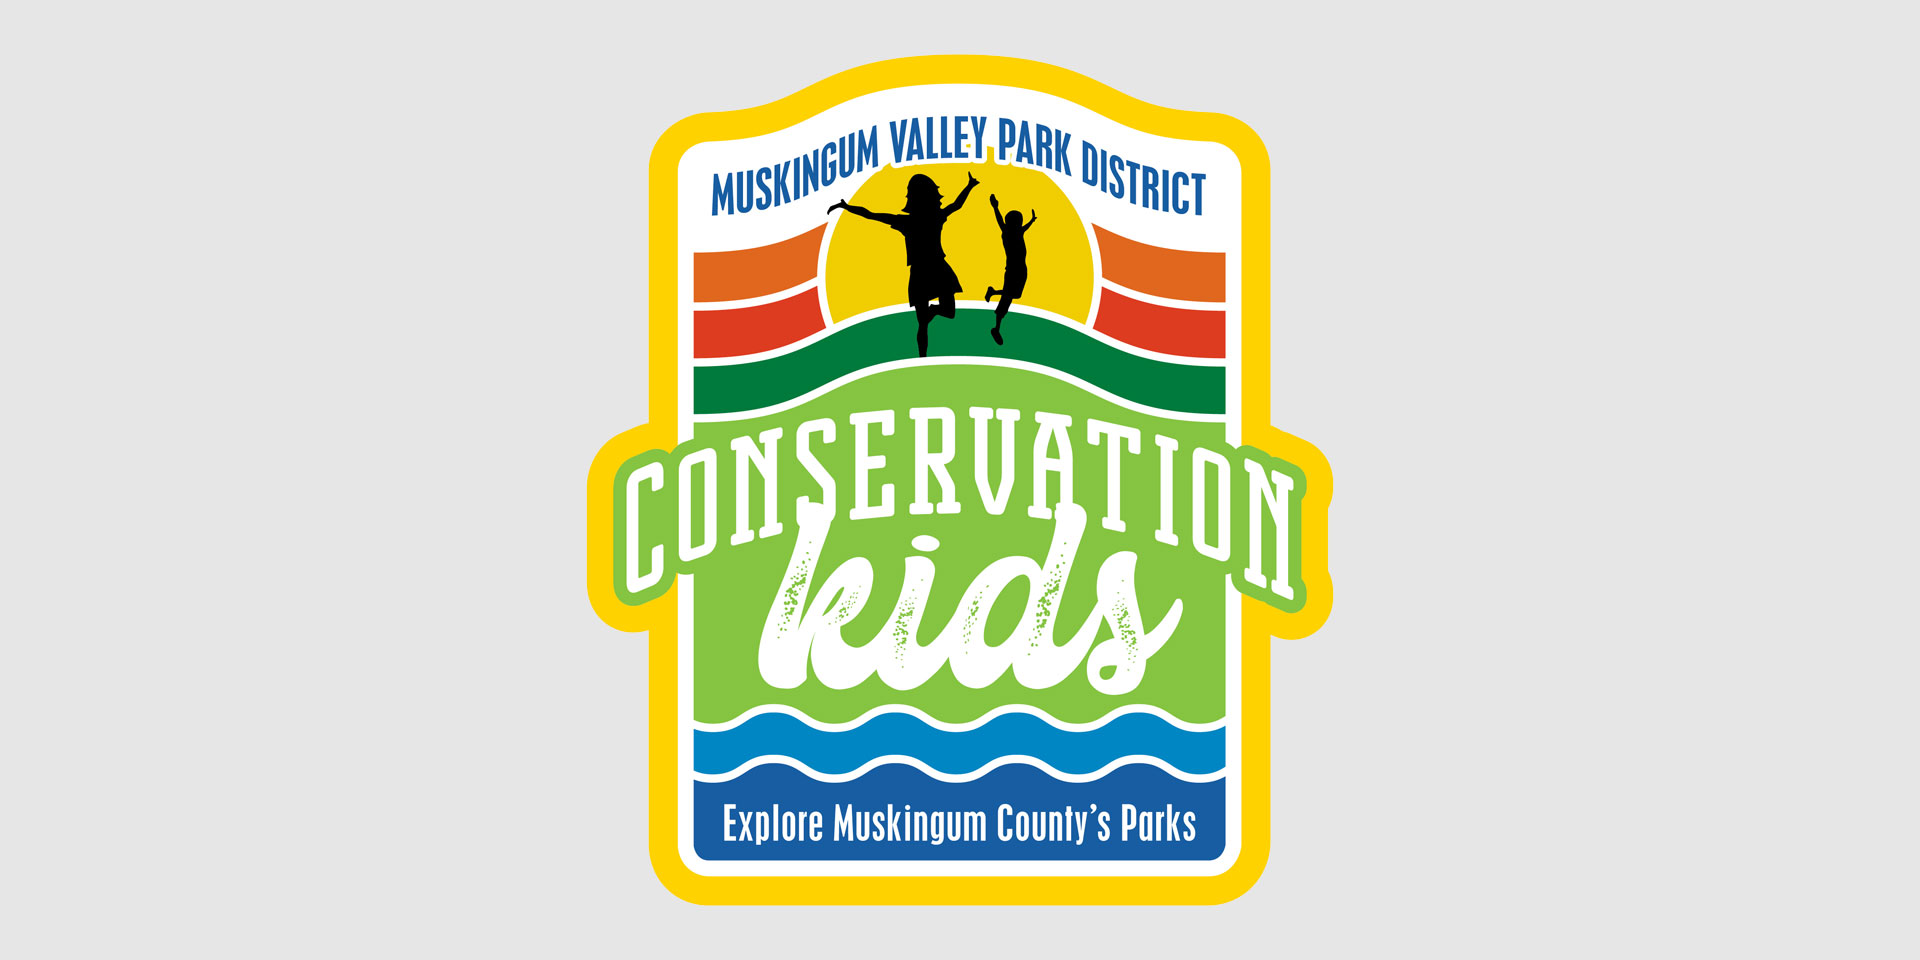 Conservation Kids Club Internship With MVPD